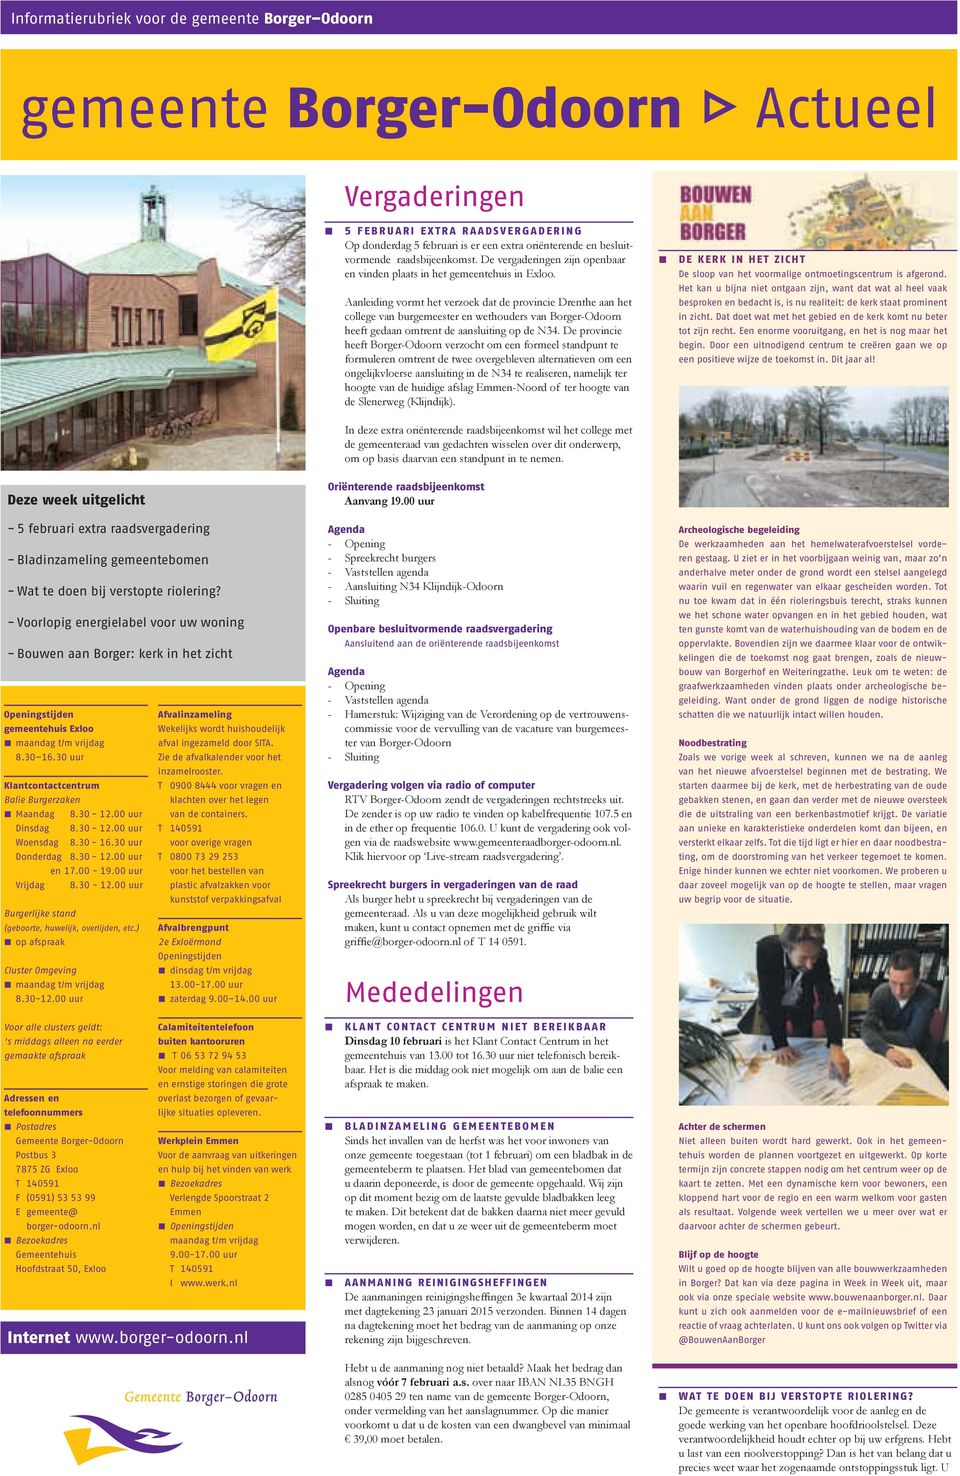 Aanleiding vormt het verzoek dat de provincie Drenthe aan het college van burgemeester en wethouders van Borger-Odoorn heeft gedaan omtrent de aansluiting op de N34.